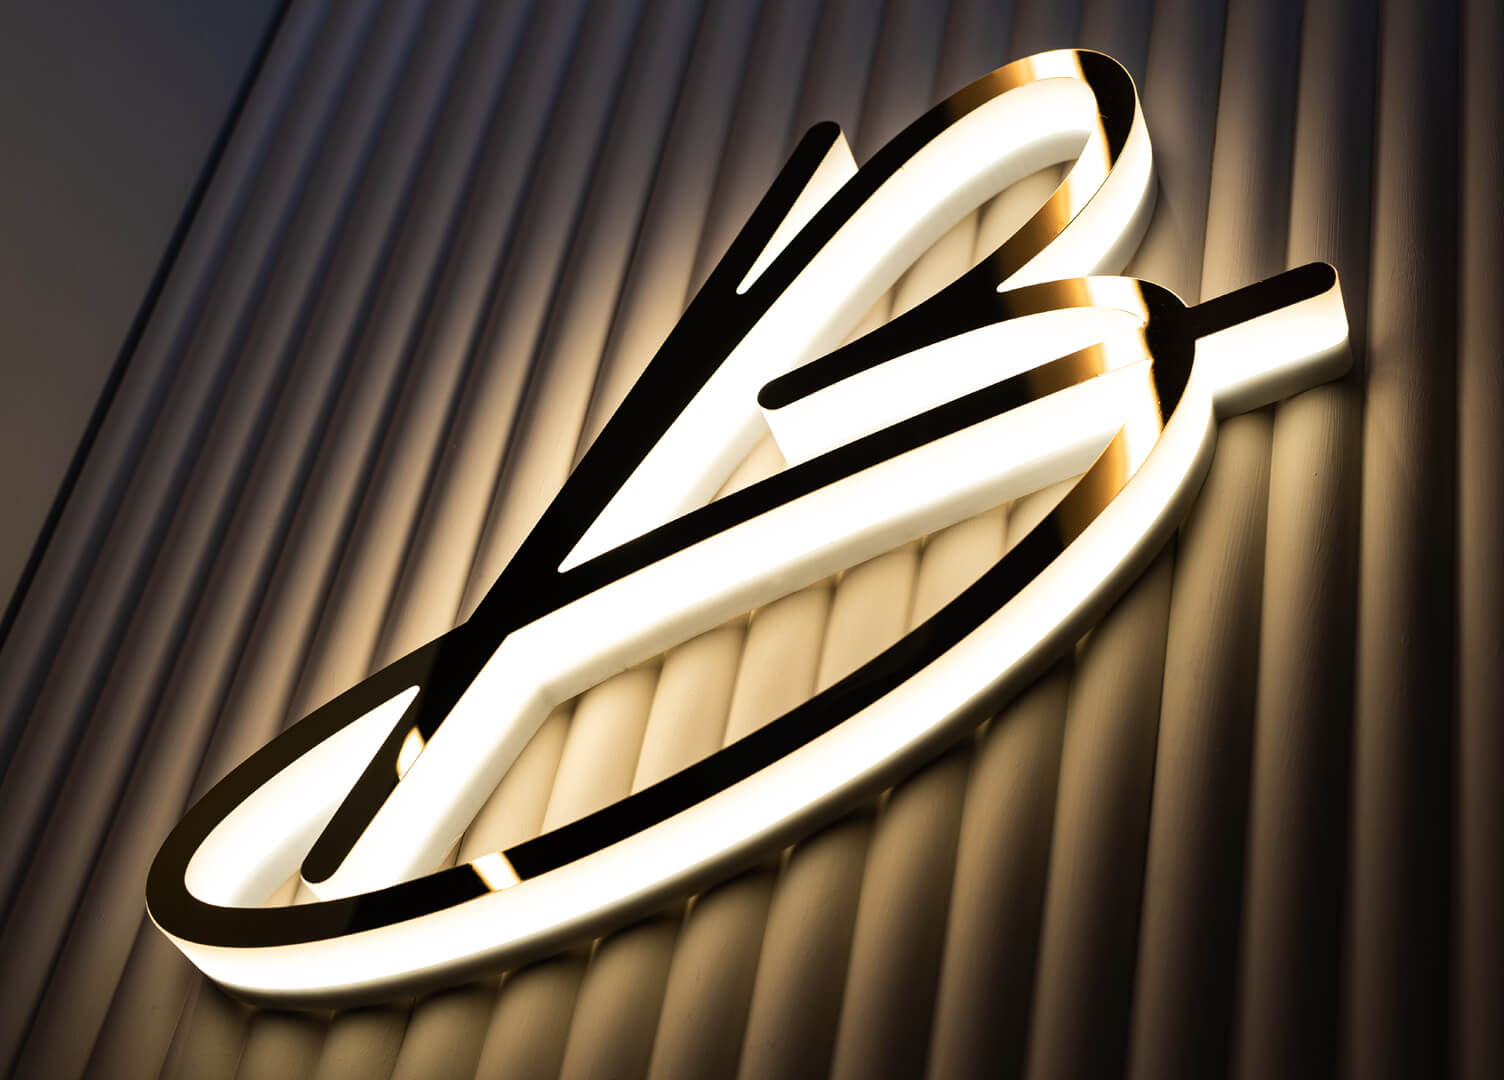 Blushington Letter B - Letter B met Blushington logo in goud, verlicht langs de LED omlijning